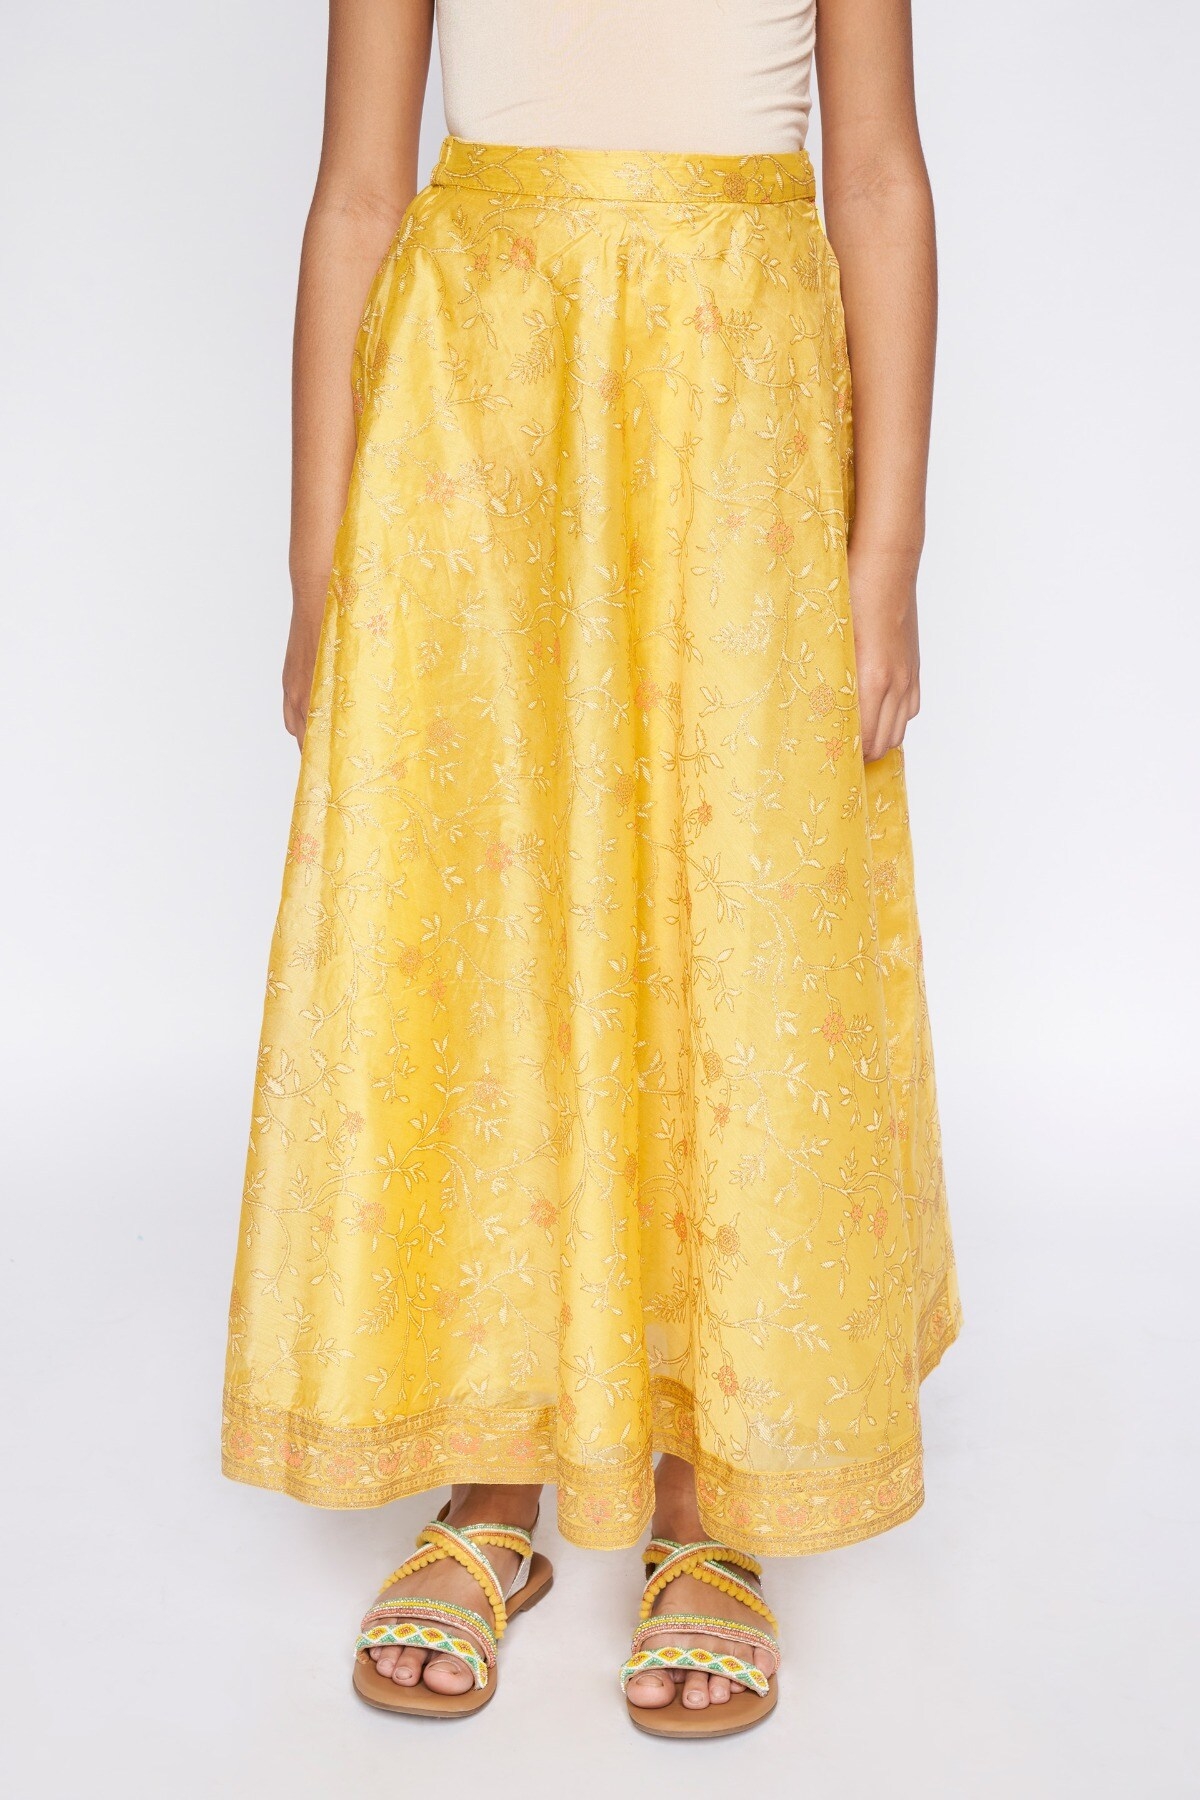 Global Desi | Global Desi Yellow Skirt 1